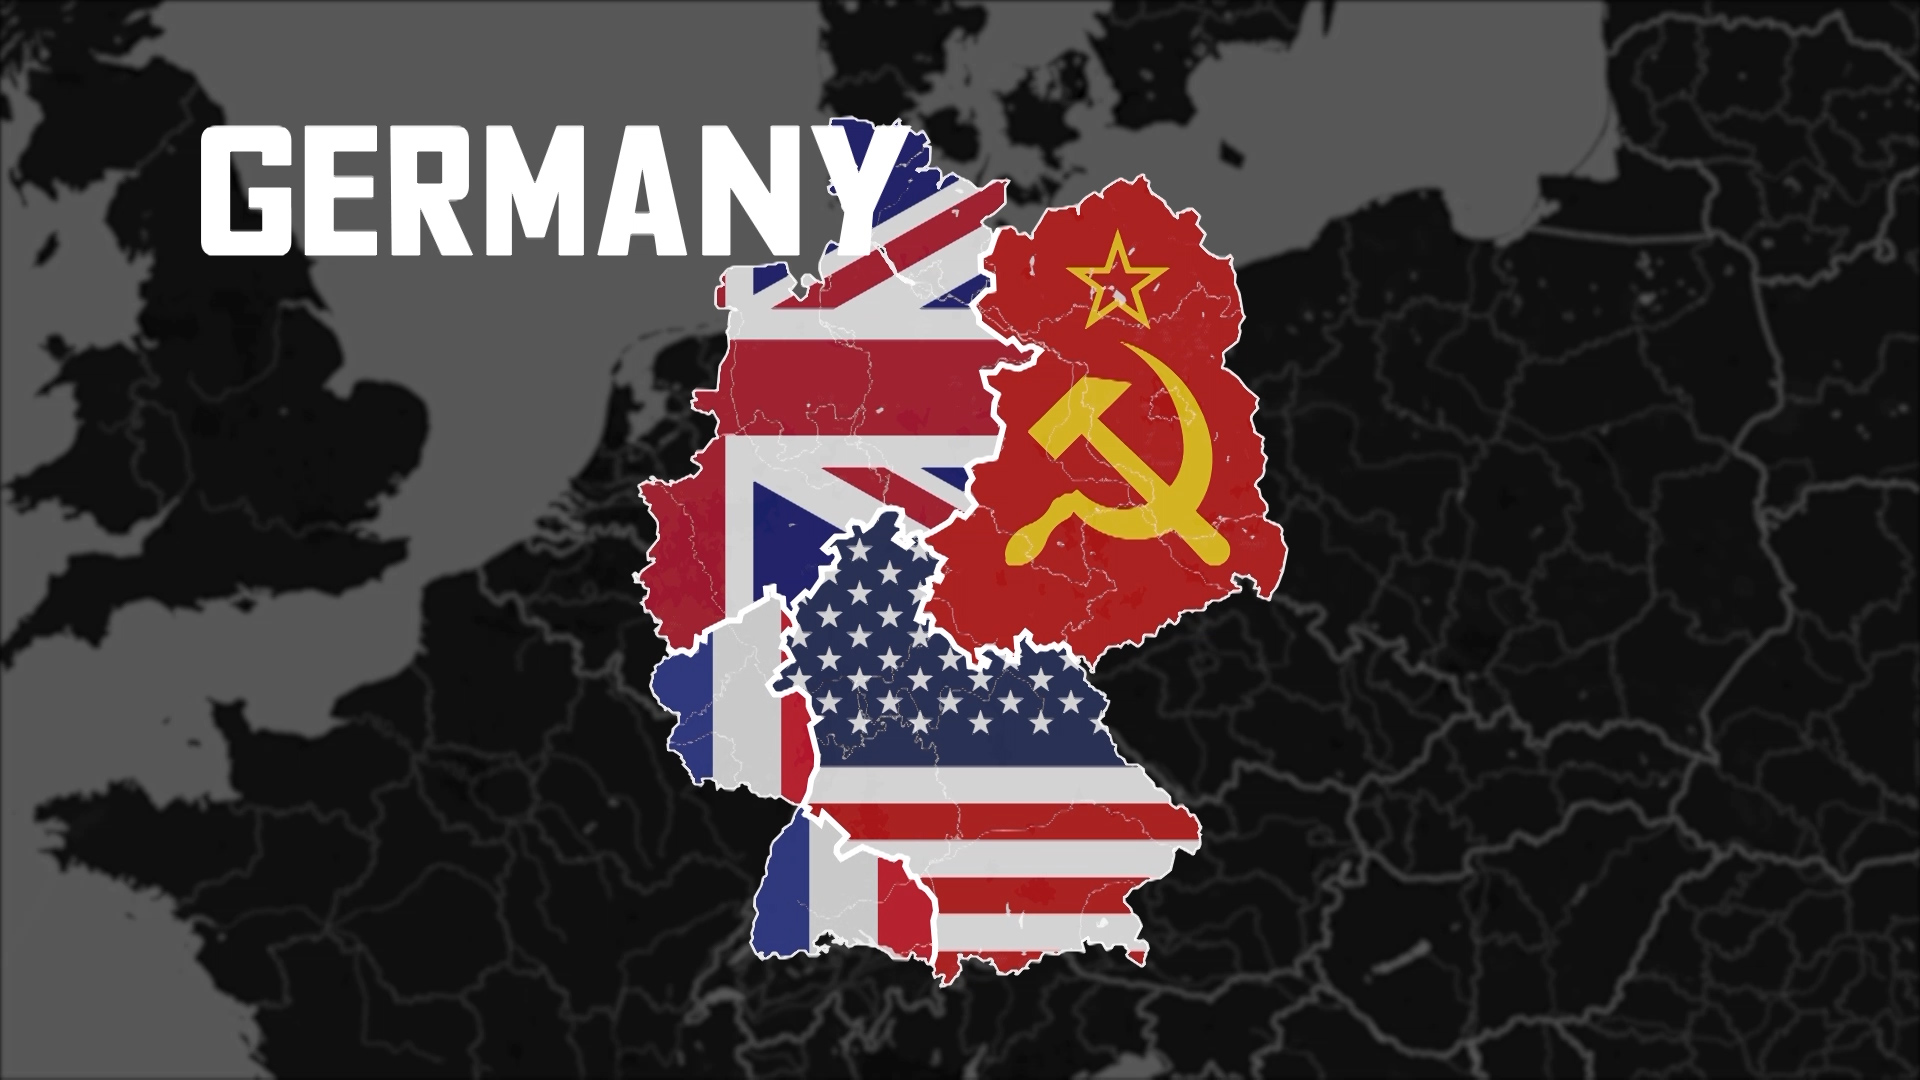 تقسیم آلمان بعد از جنگ جهانی دوم